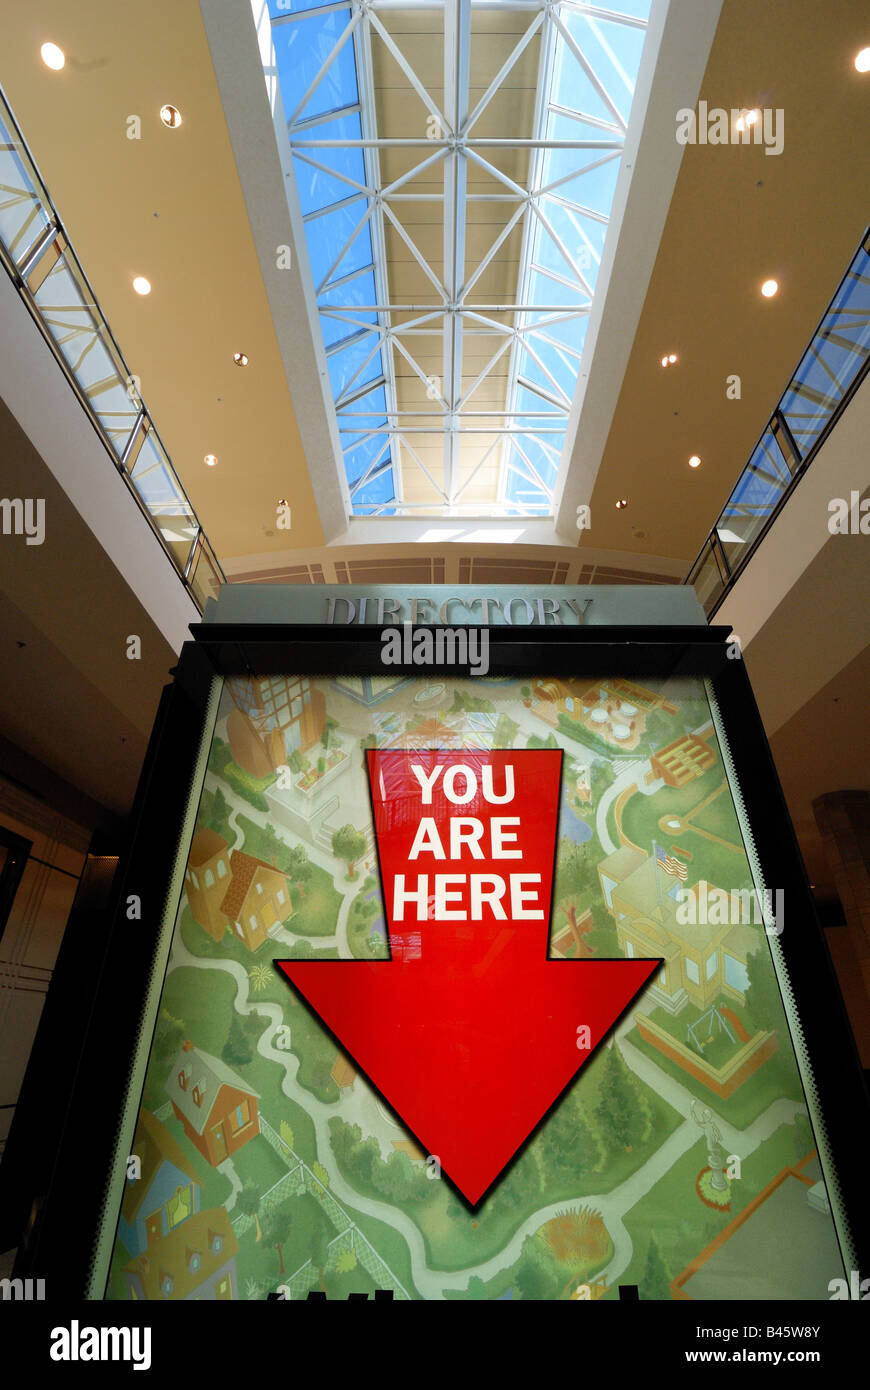 Ein großer roter Pfeil zeigt das offensichtliche, "YOU ARE HERE" auf diese Anzeige in Ross Park Mall in Pittsburgh, Pennsylvania. Stockfoto